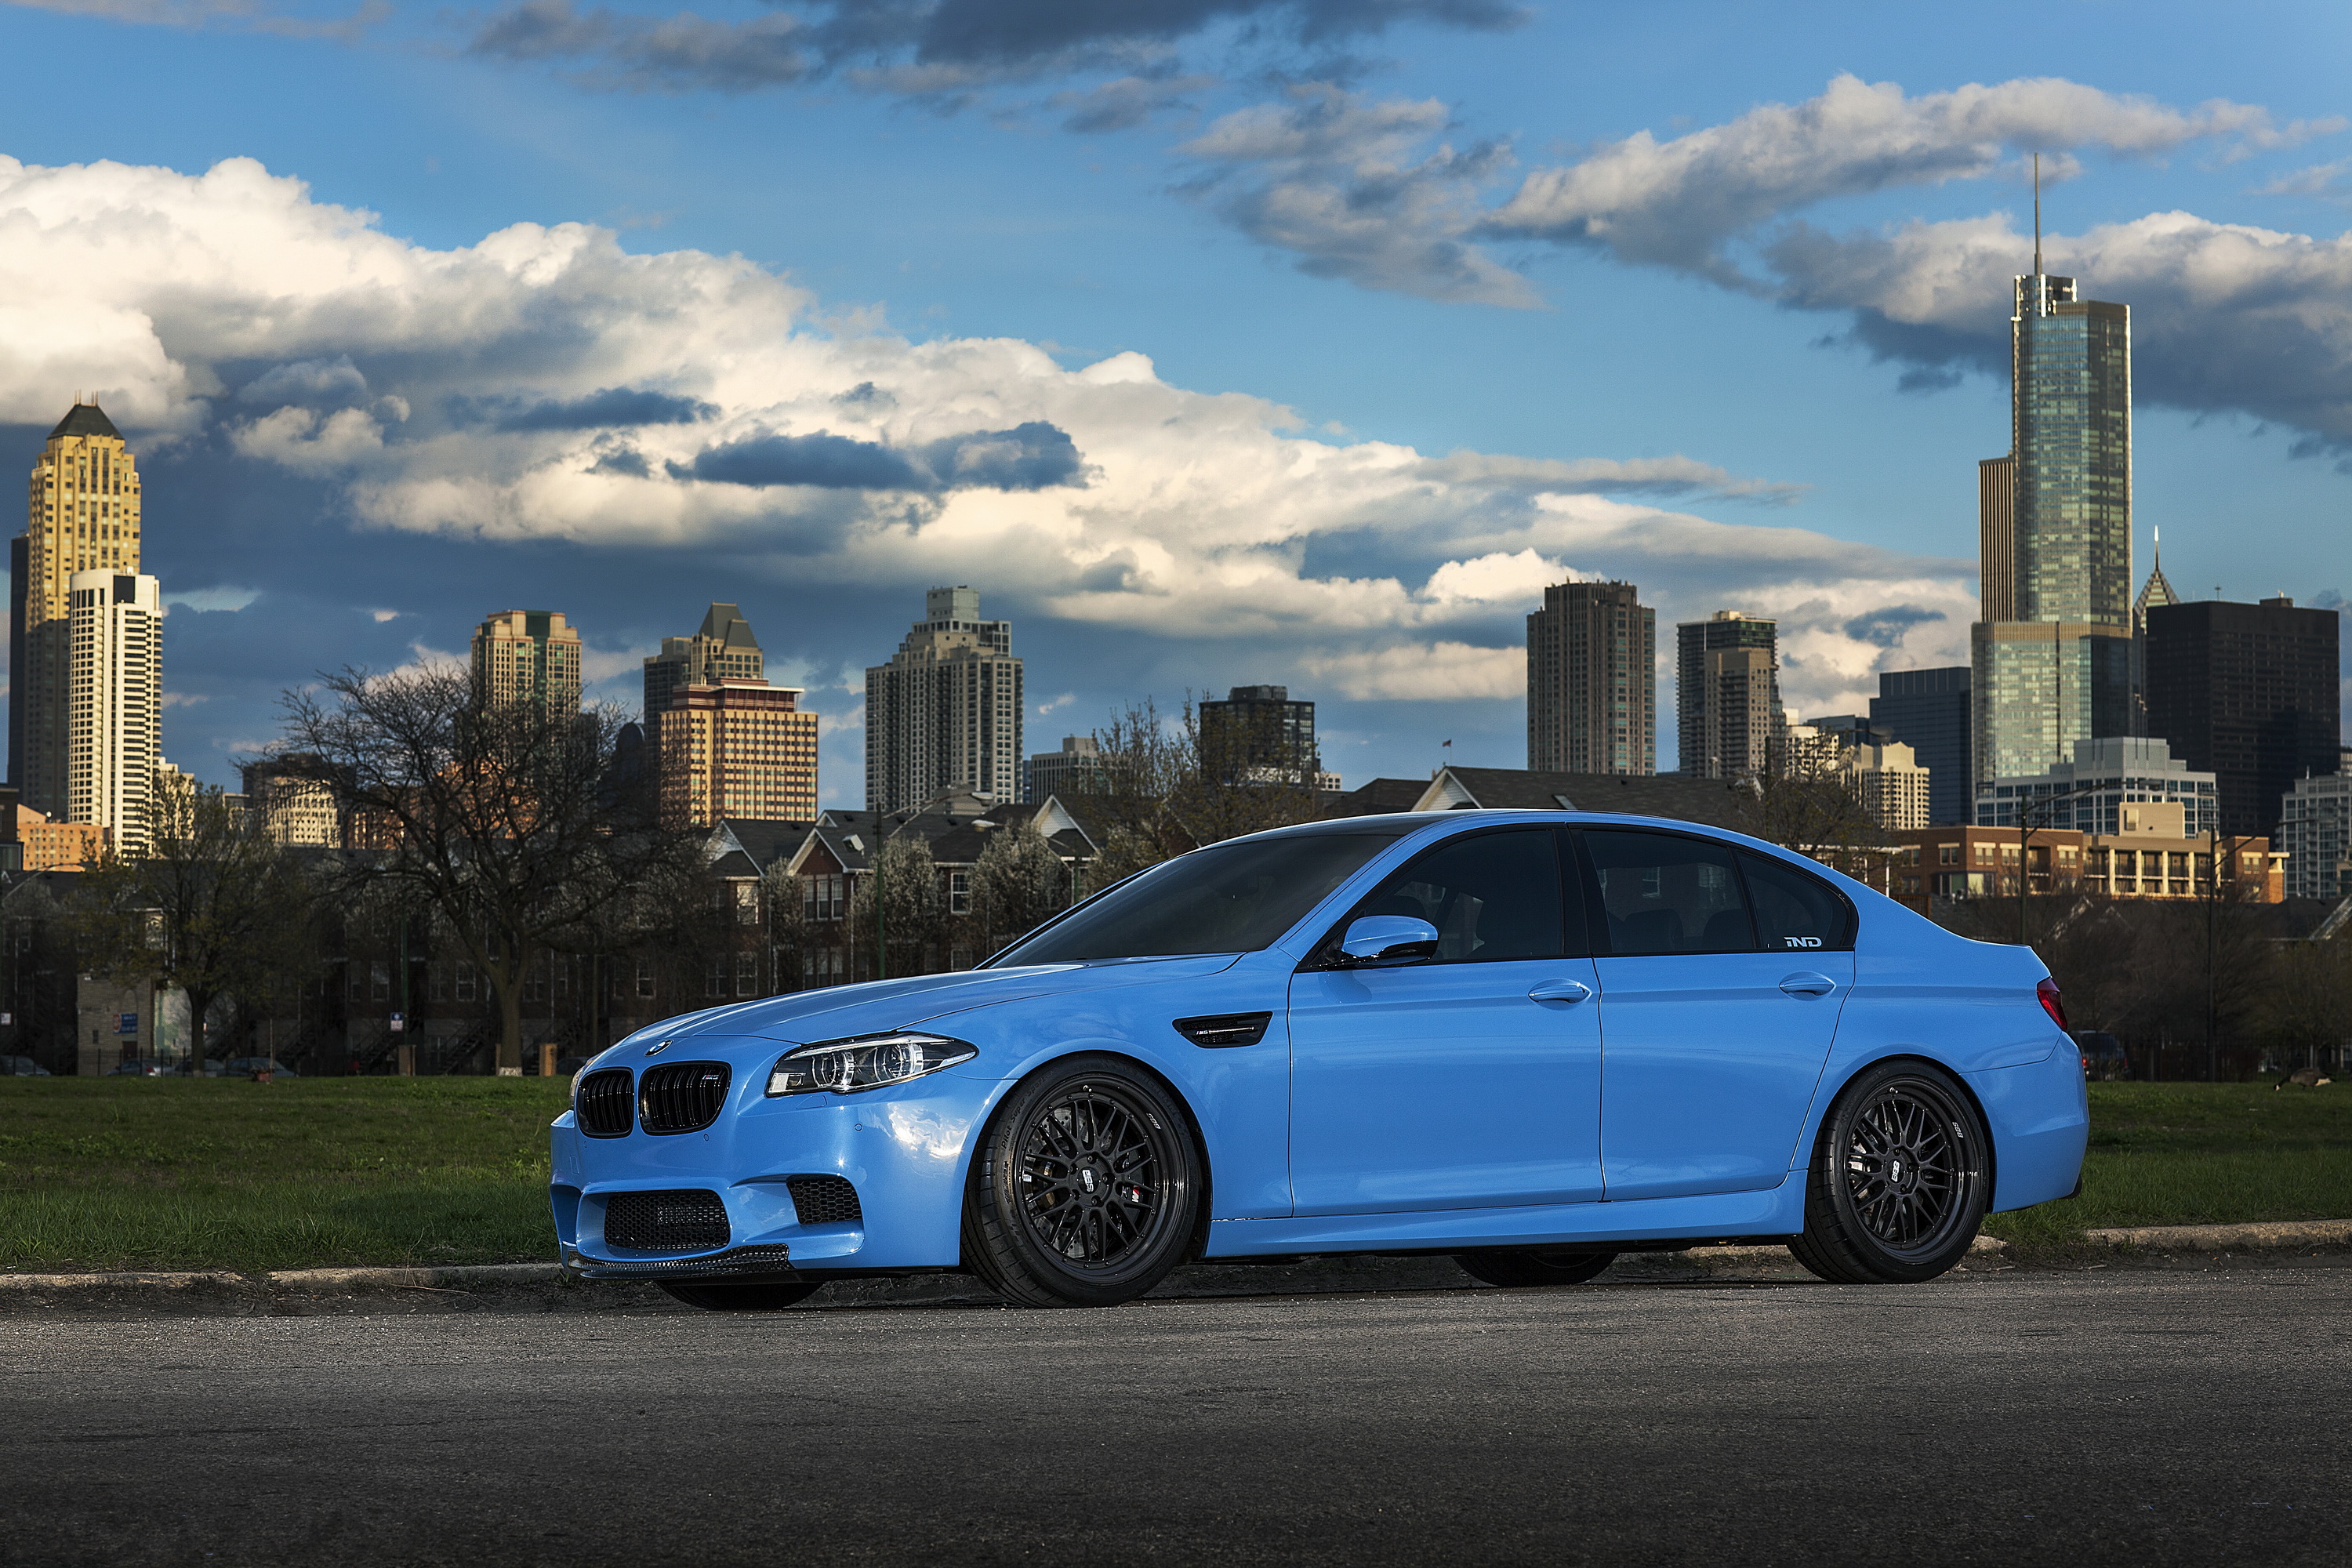 Bmw m 5 10. BMW m5 f10. BMW m5 f10 синяя. BMW m5 f10 m5. БМВ м5 синяя.